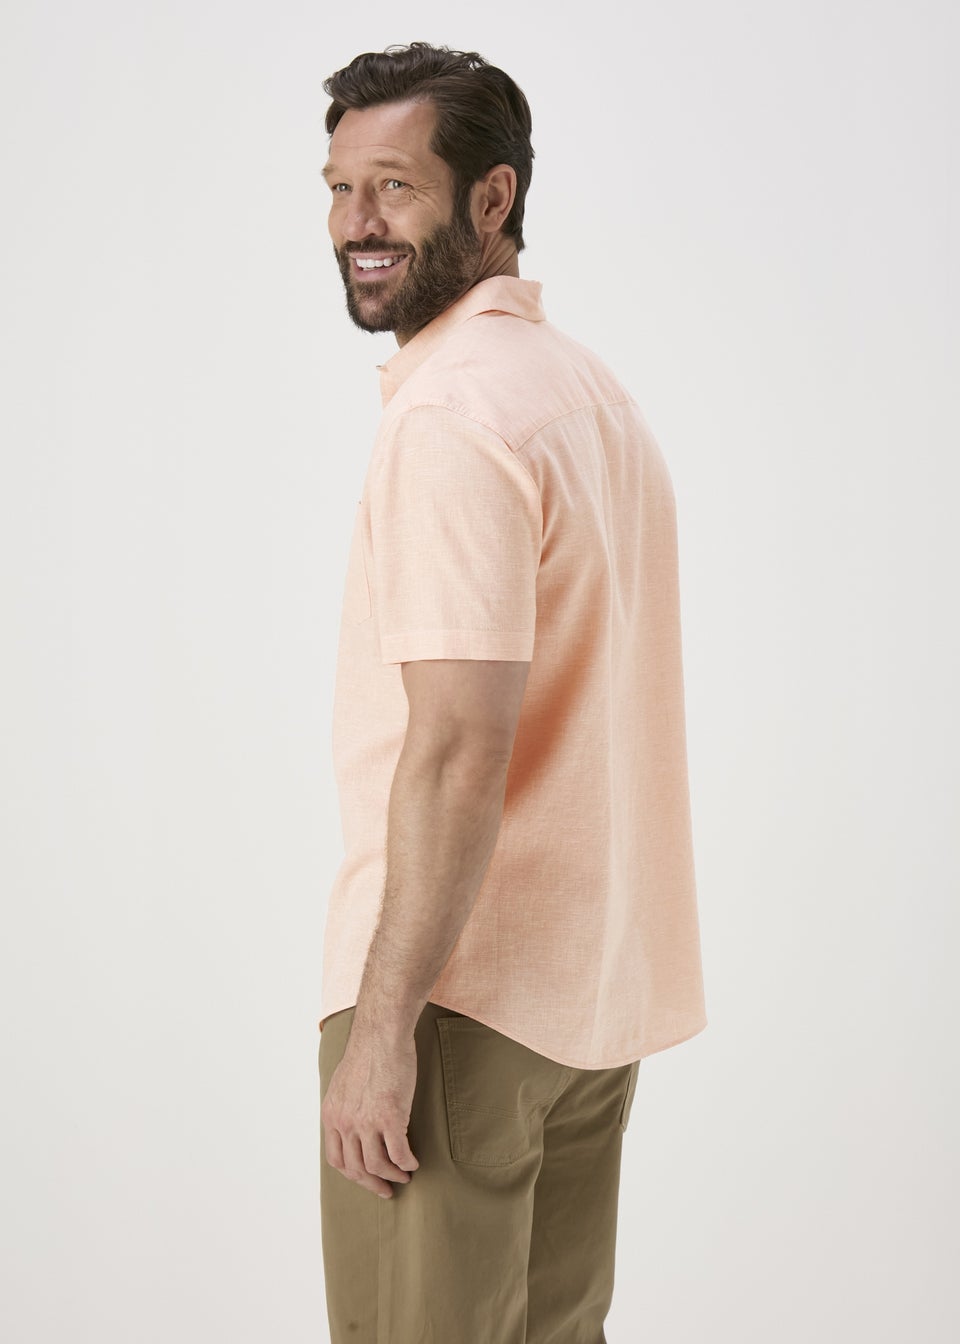 Lincoln Peach Shirt